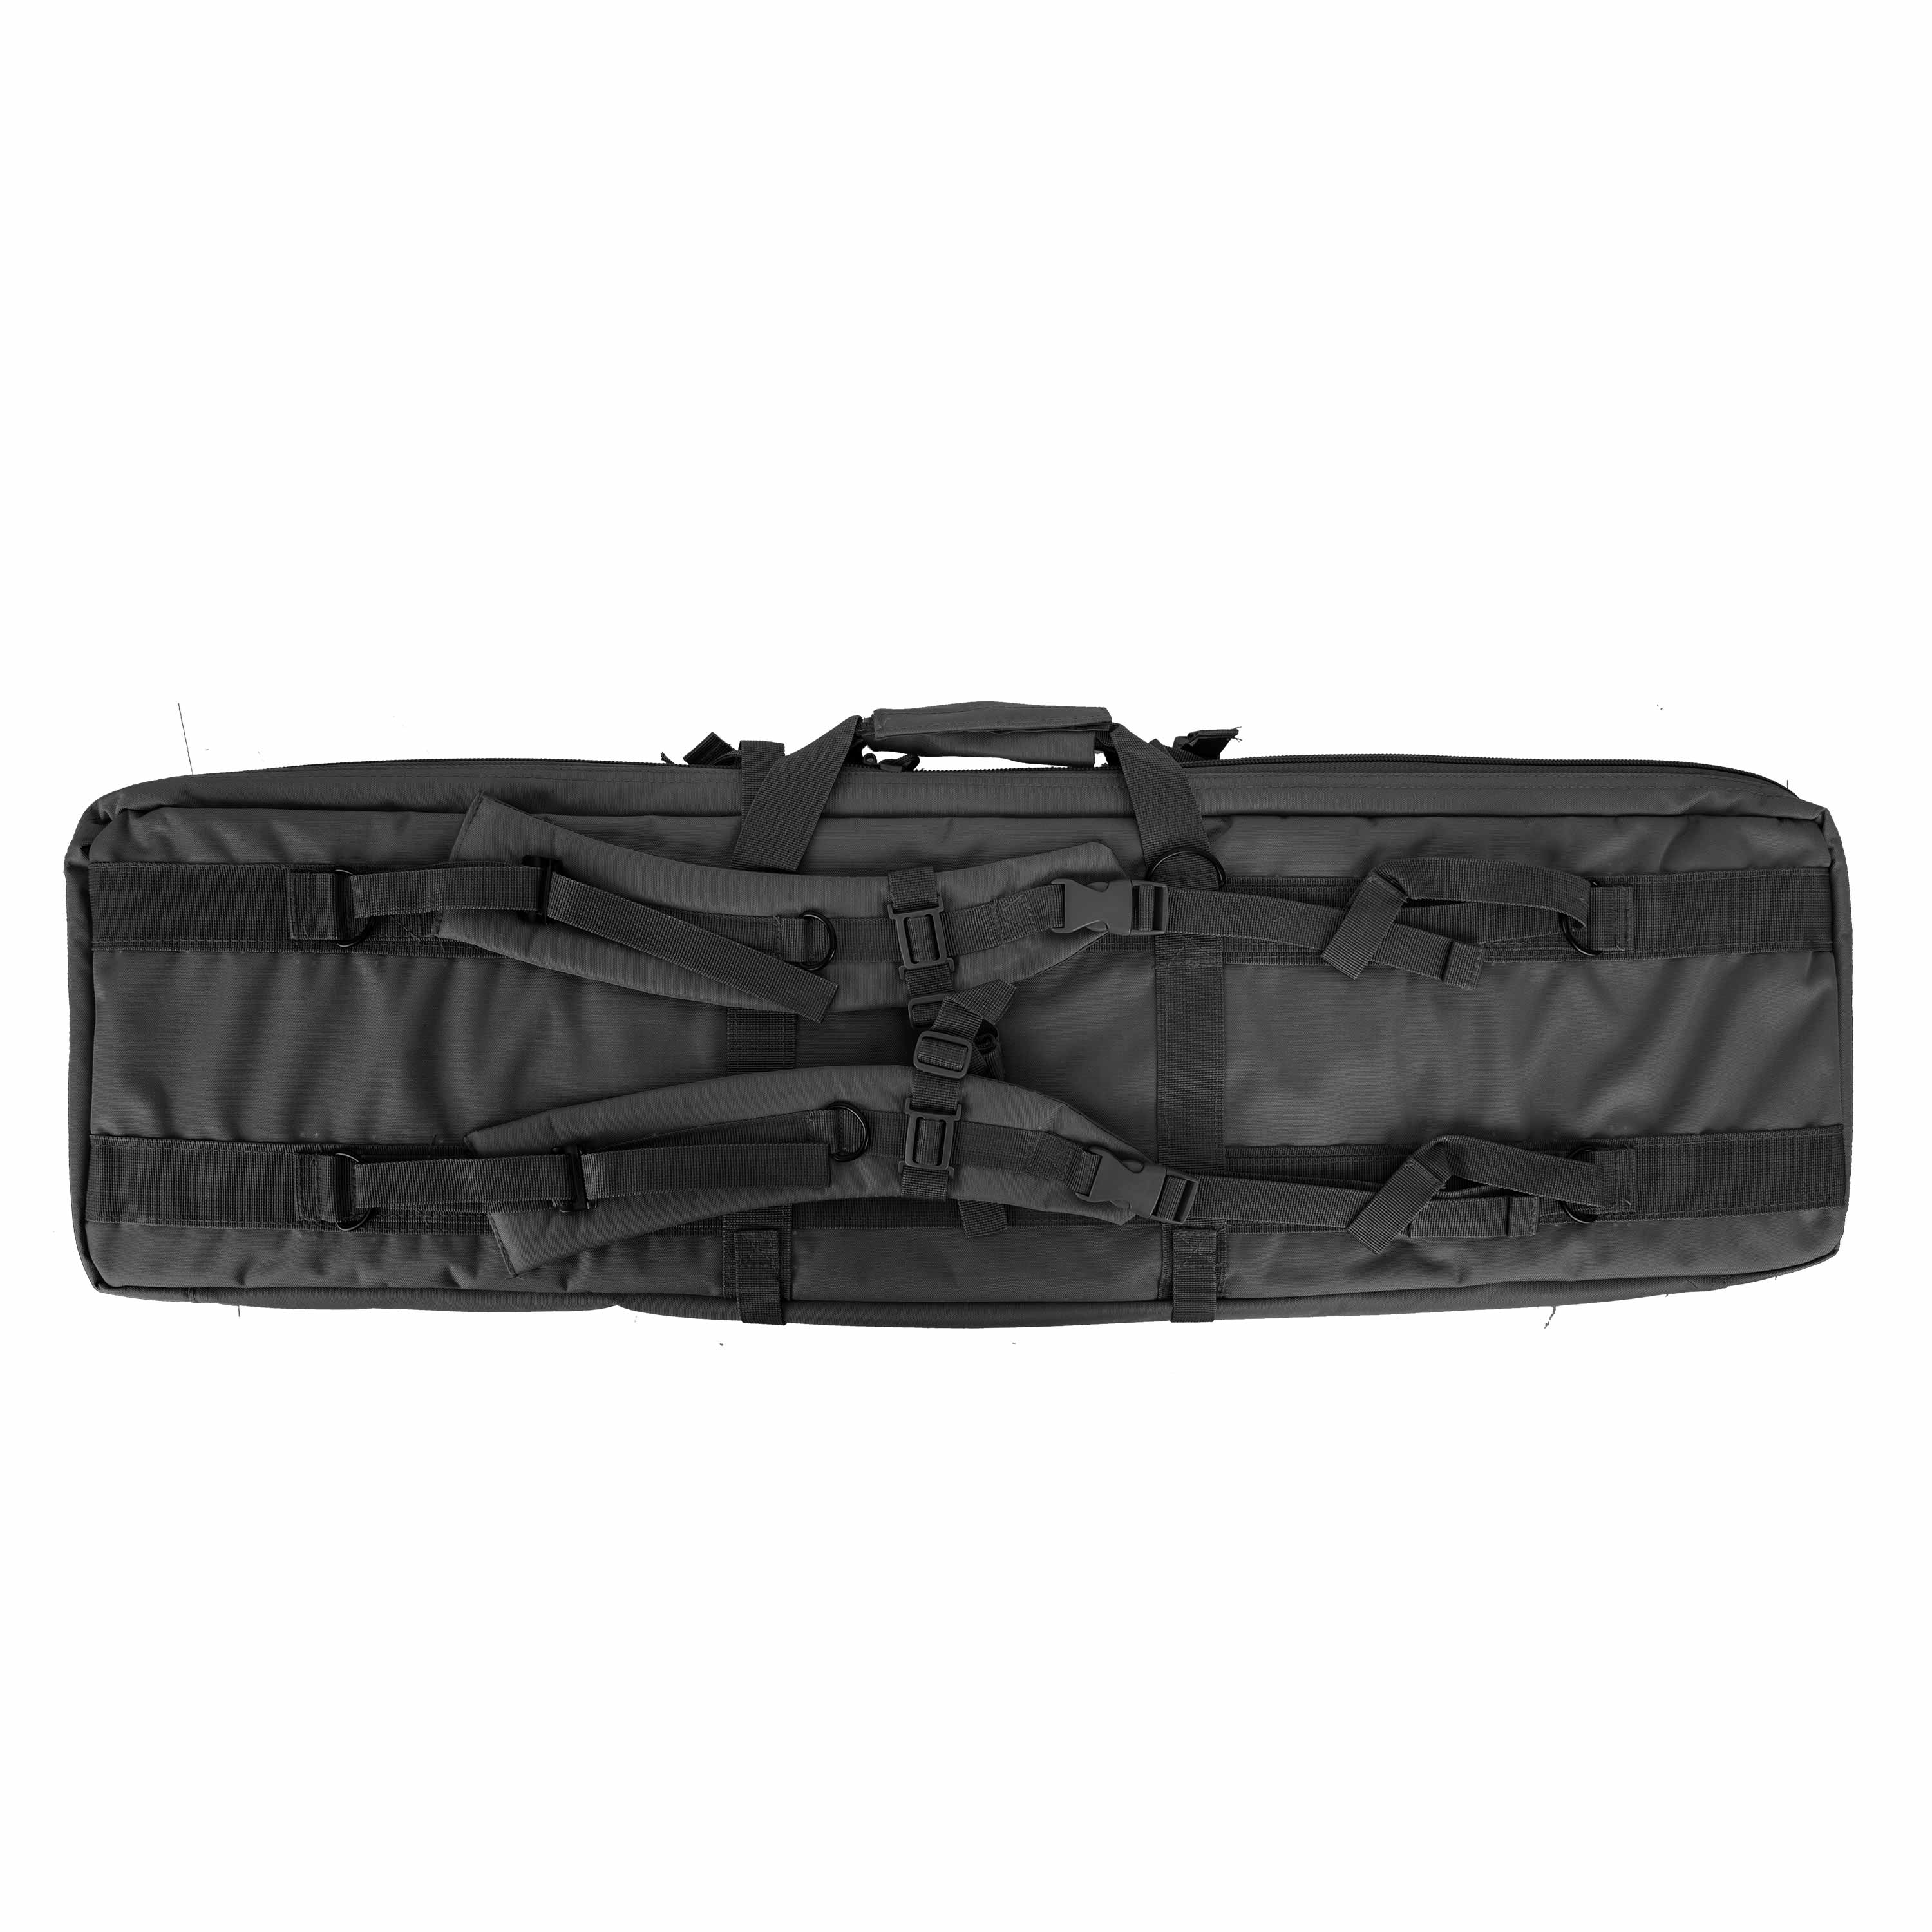 Mil-Tec Rifle Bag black, Mil-Tec Rifle Bag black, Cases, Accessories